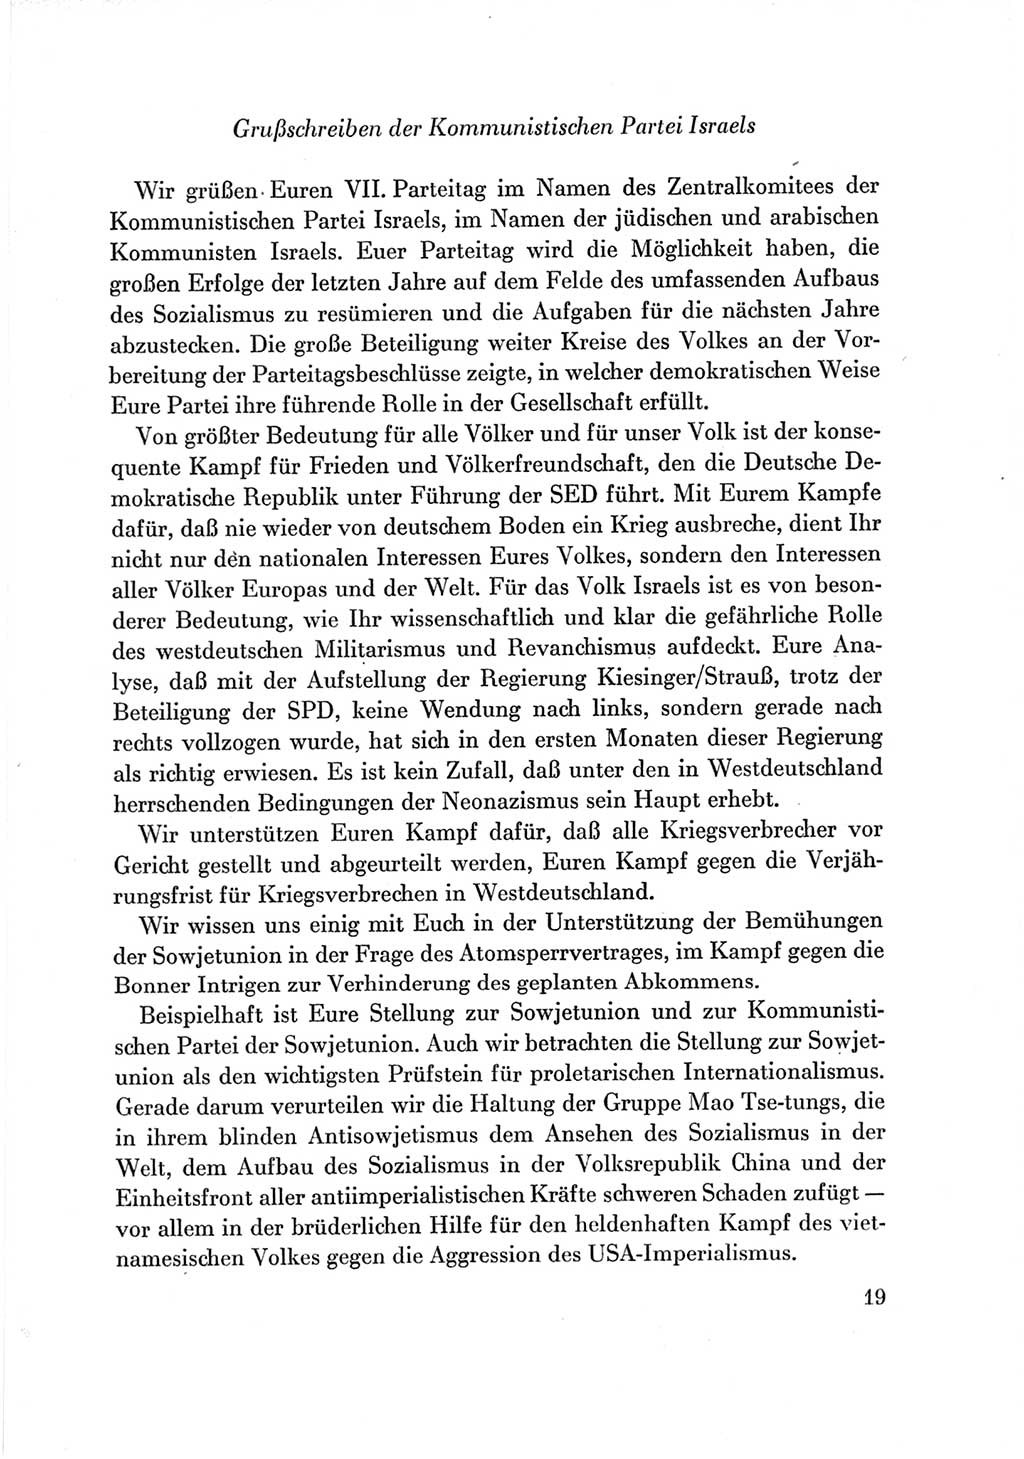 Protokoll der Verhandlungen des Ⅶ. Parteitages der Sozialistischen Einheitspartei Deutschlands (SED) [Deutsche Demokratische Republik (DDR)] 1967, Band Ⅲ, Seite 19 (Prot. Verh. Ⅶ. PT SED DDR 1967, Bd. Ⅲ, S. 19)